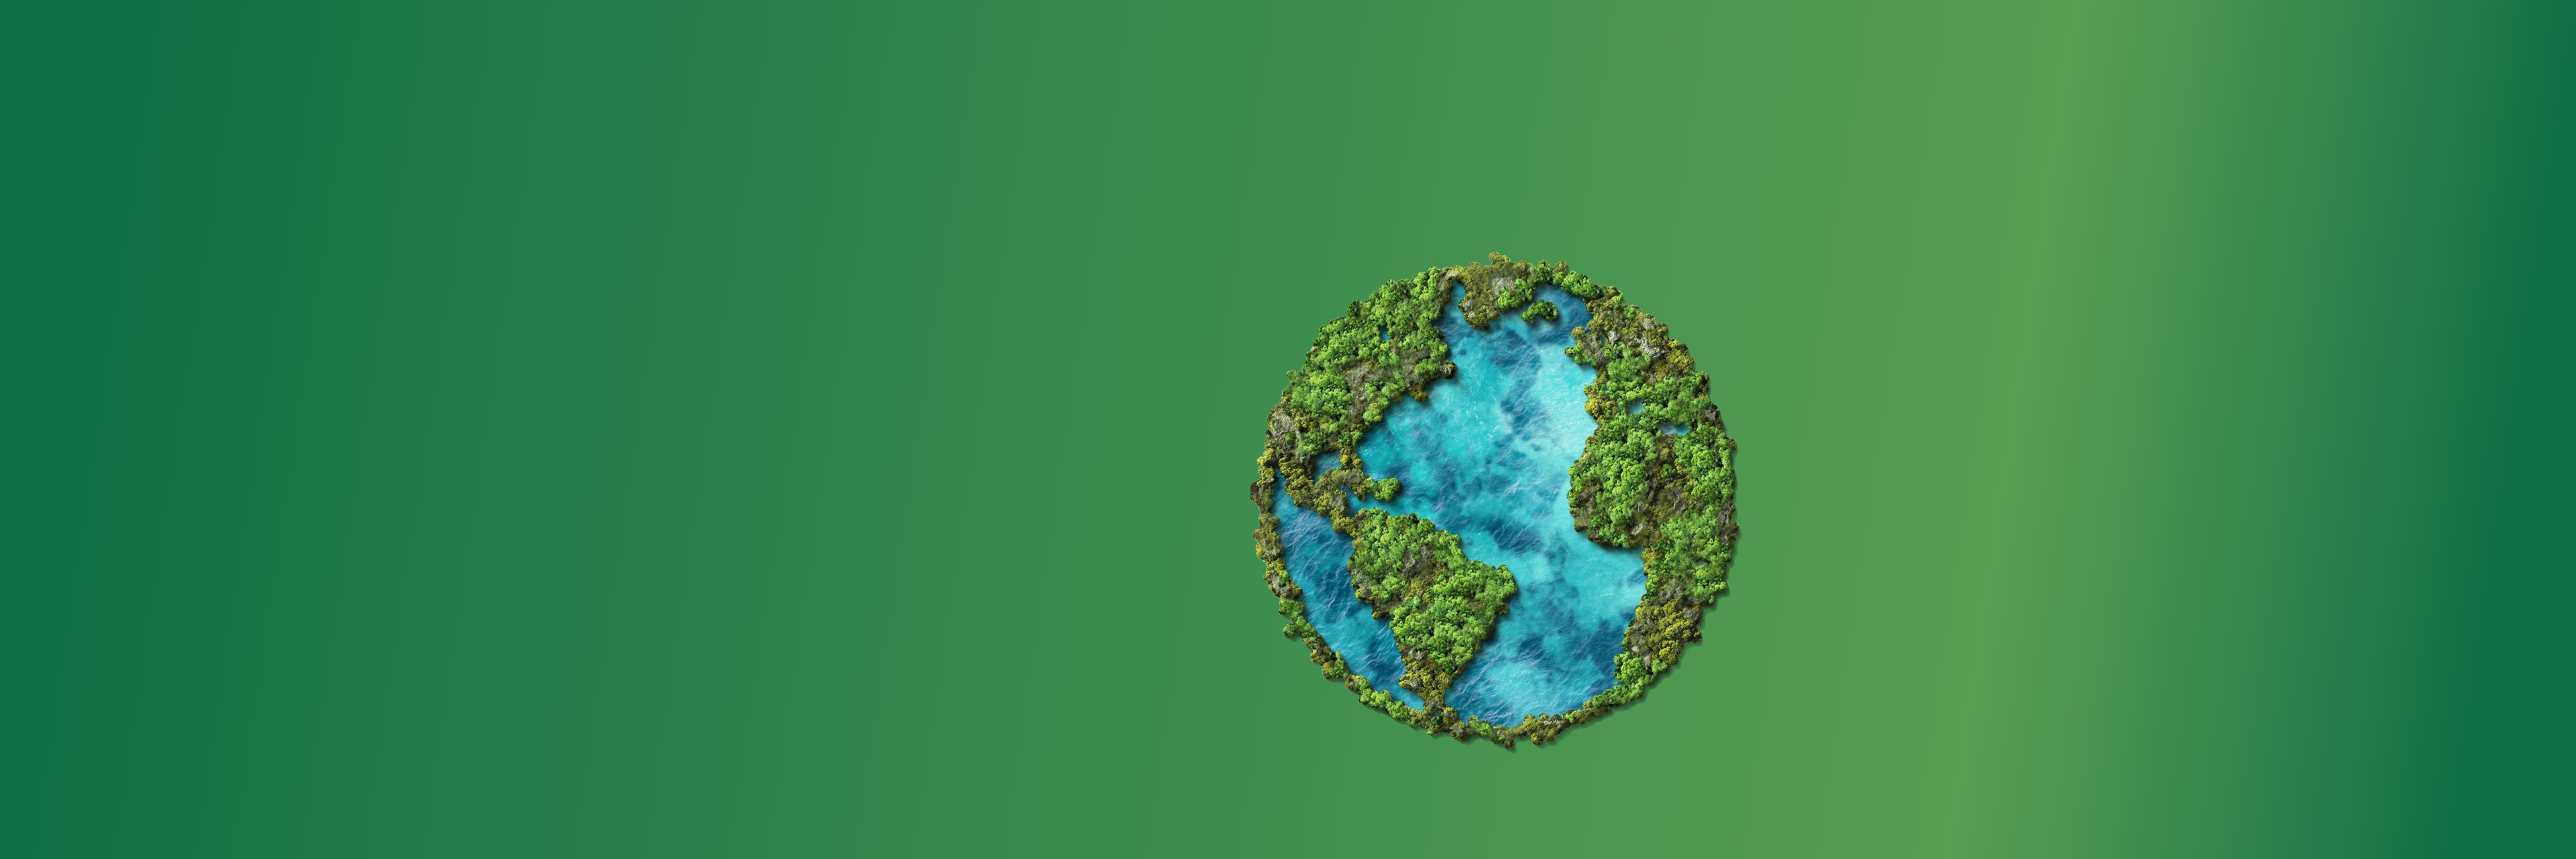 푸른 바다와 초록 숲으로 이루어진 지구 모양의 사진